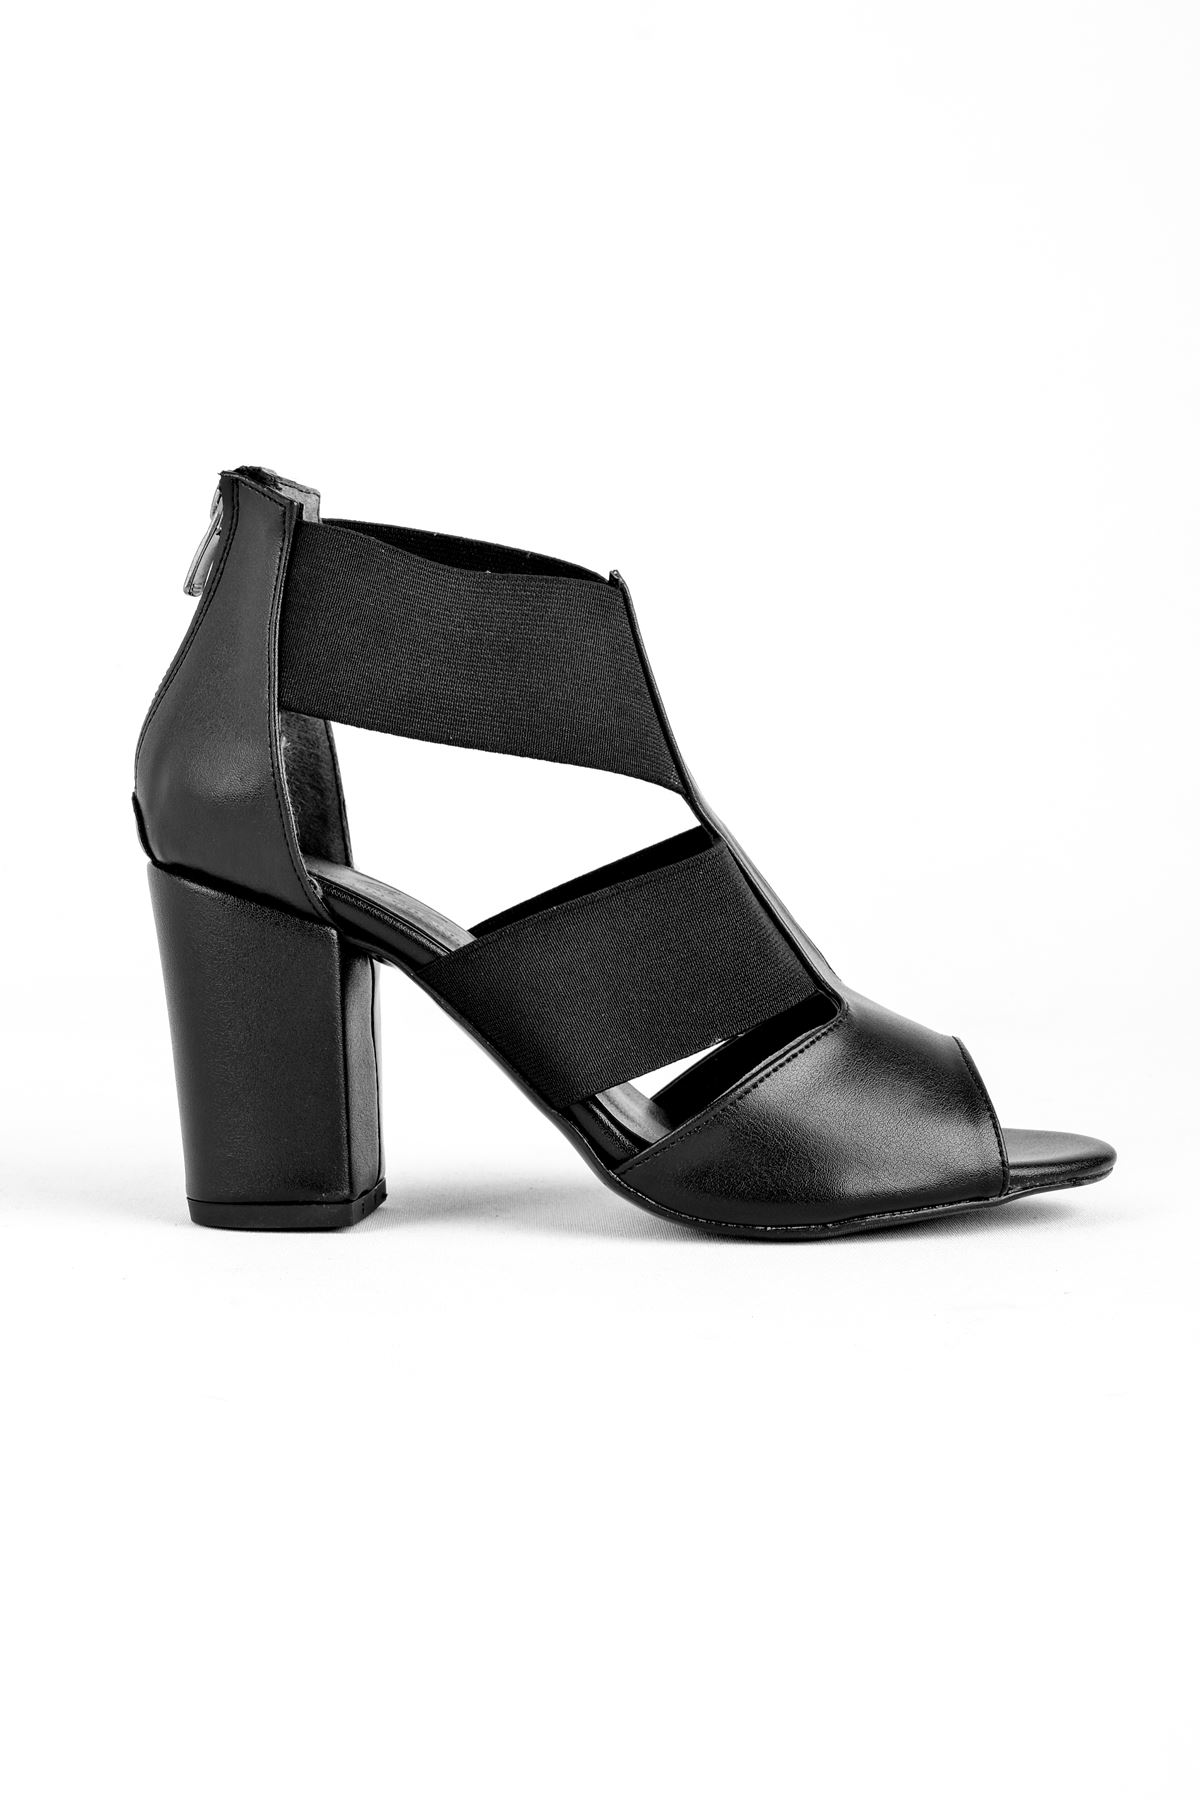 Shir Kadın Topuklu Ayakkabı Lastik Detaylı-siyah